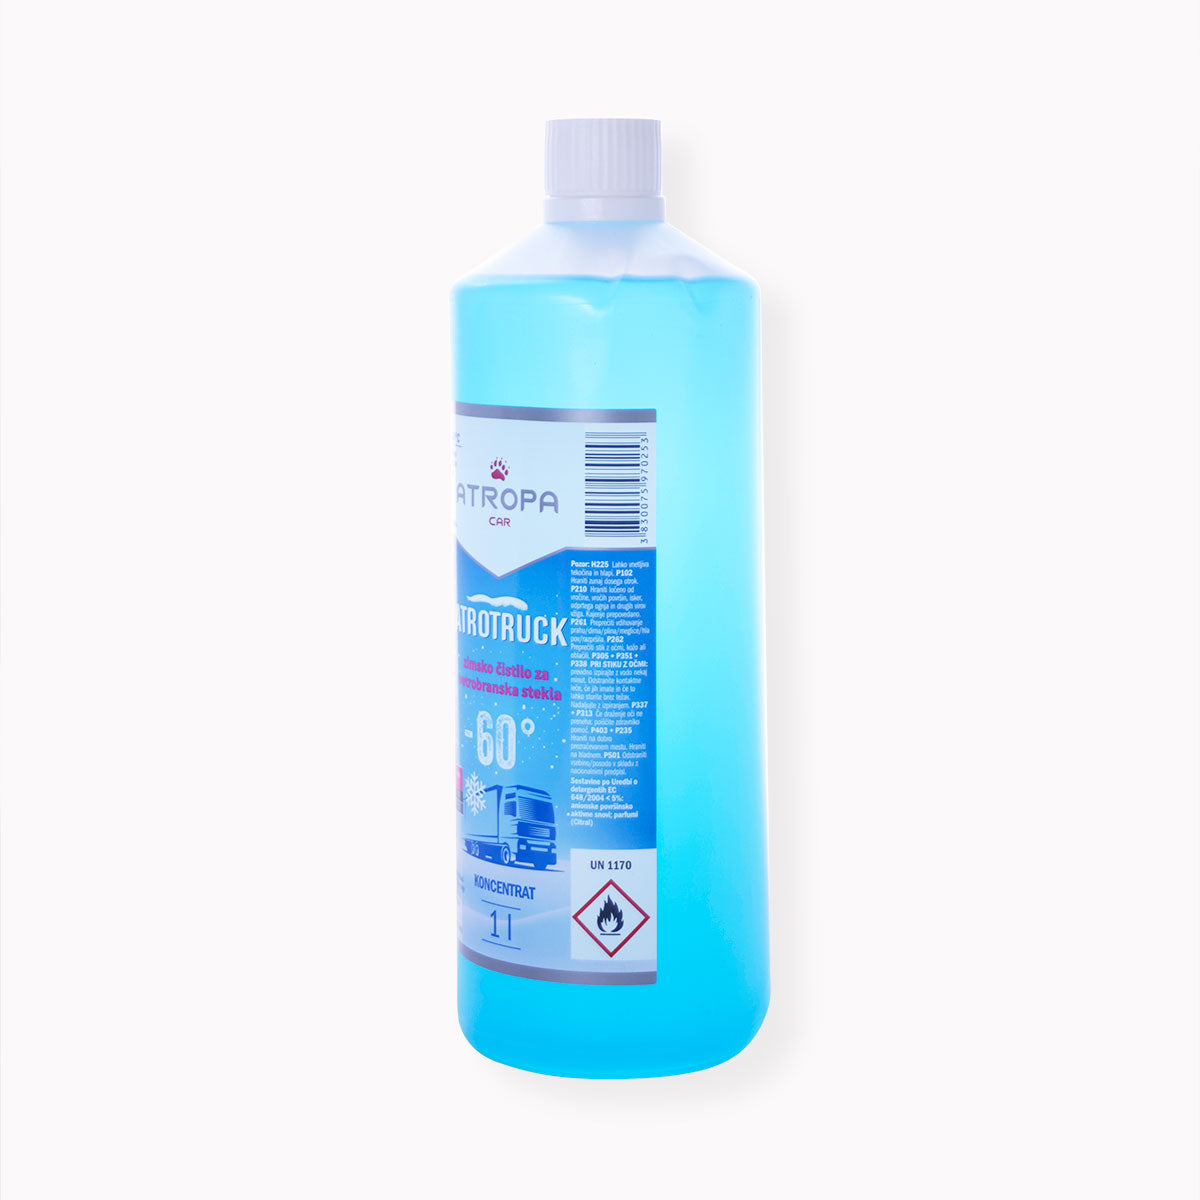 ATROTRUCK zimska tekočina za vetrobransko steklo 1l do -60 °C modre barve v praktični embalaži. Zimska tekočina za vetrobransko steklo je proizvedena v sloveniji.